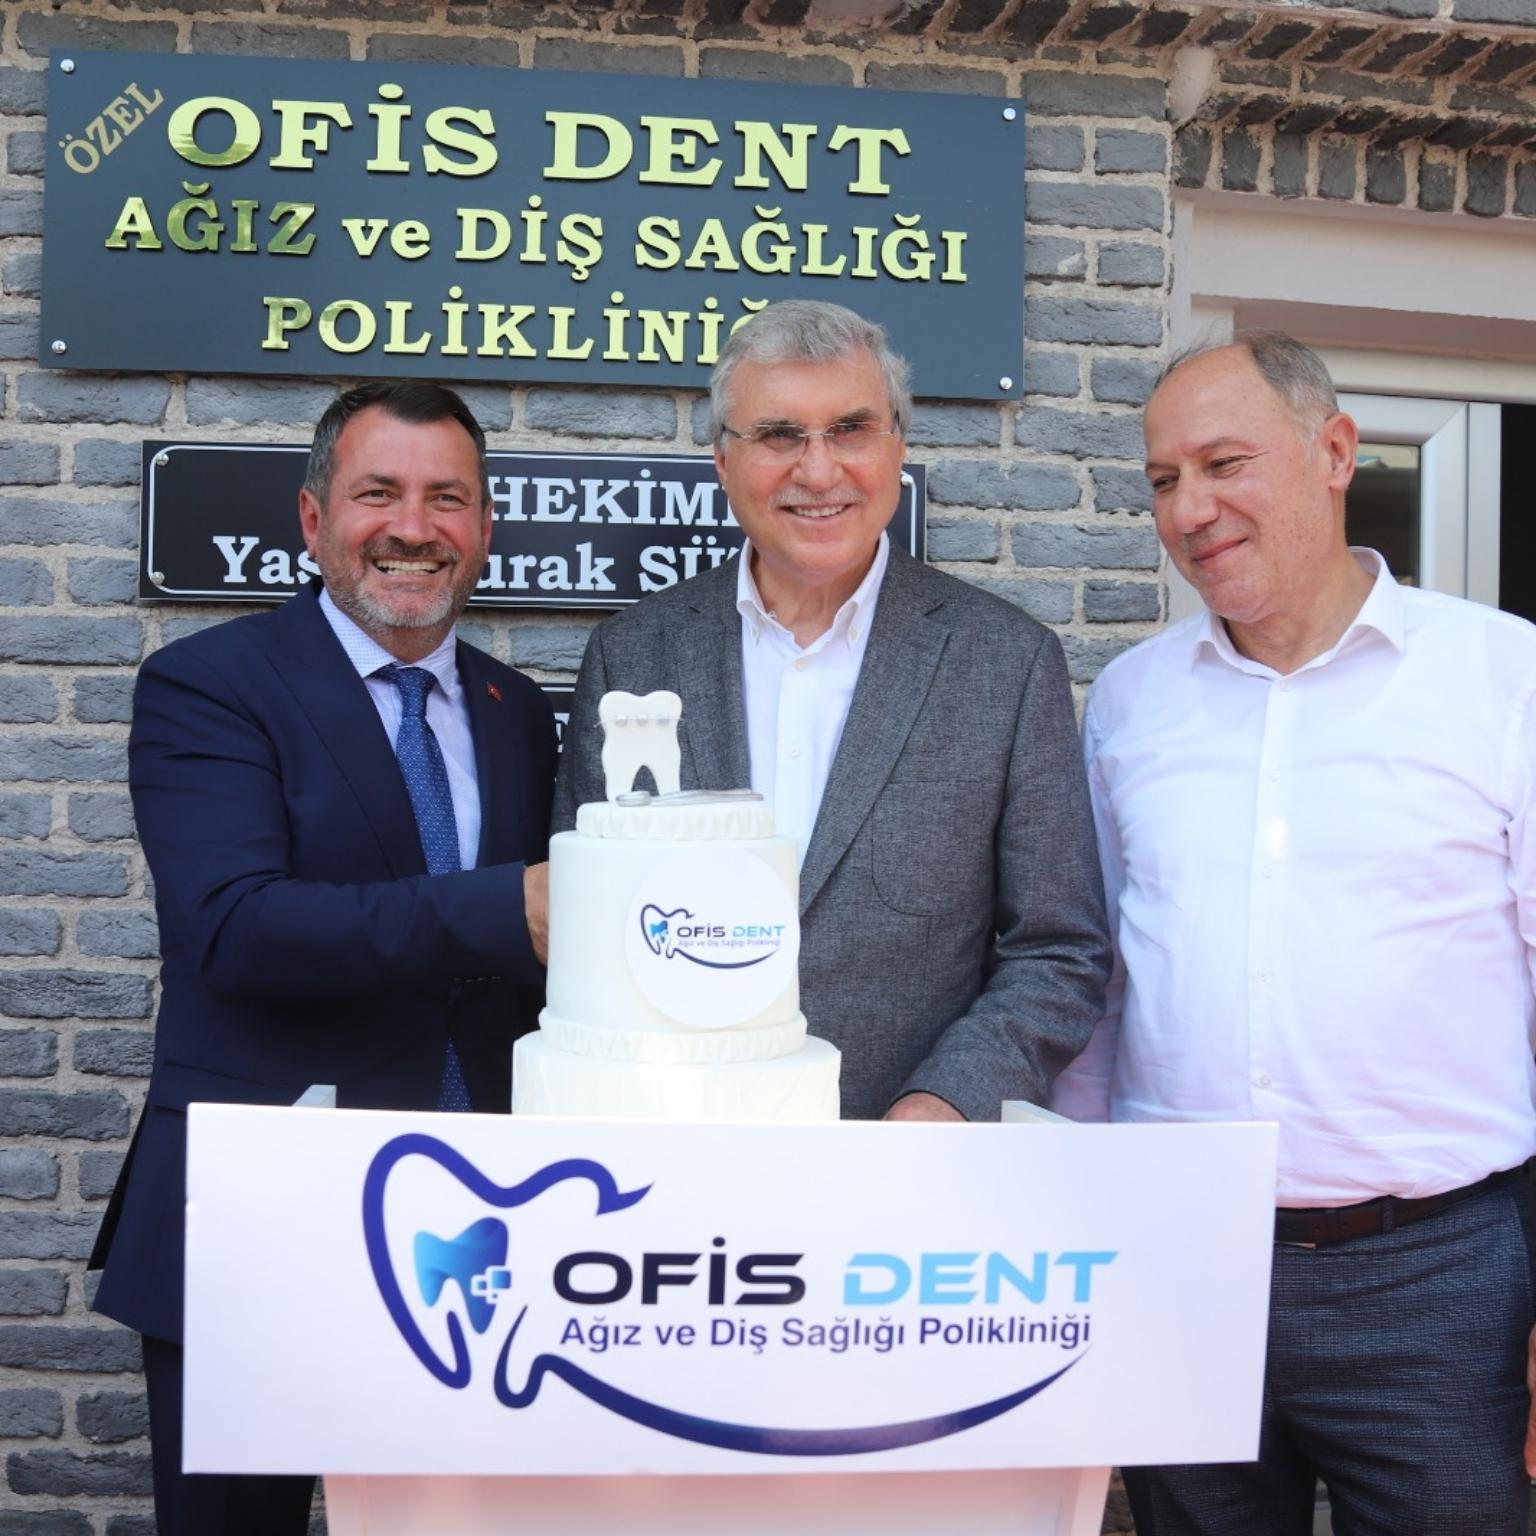 Ofis Dent Ağız ve Diş Sağlığı Polikliniği görkemli bir şekilde hizmete açıldı